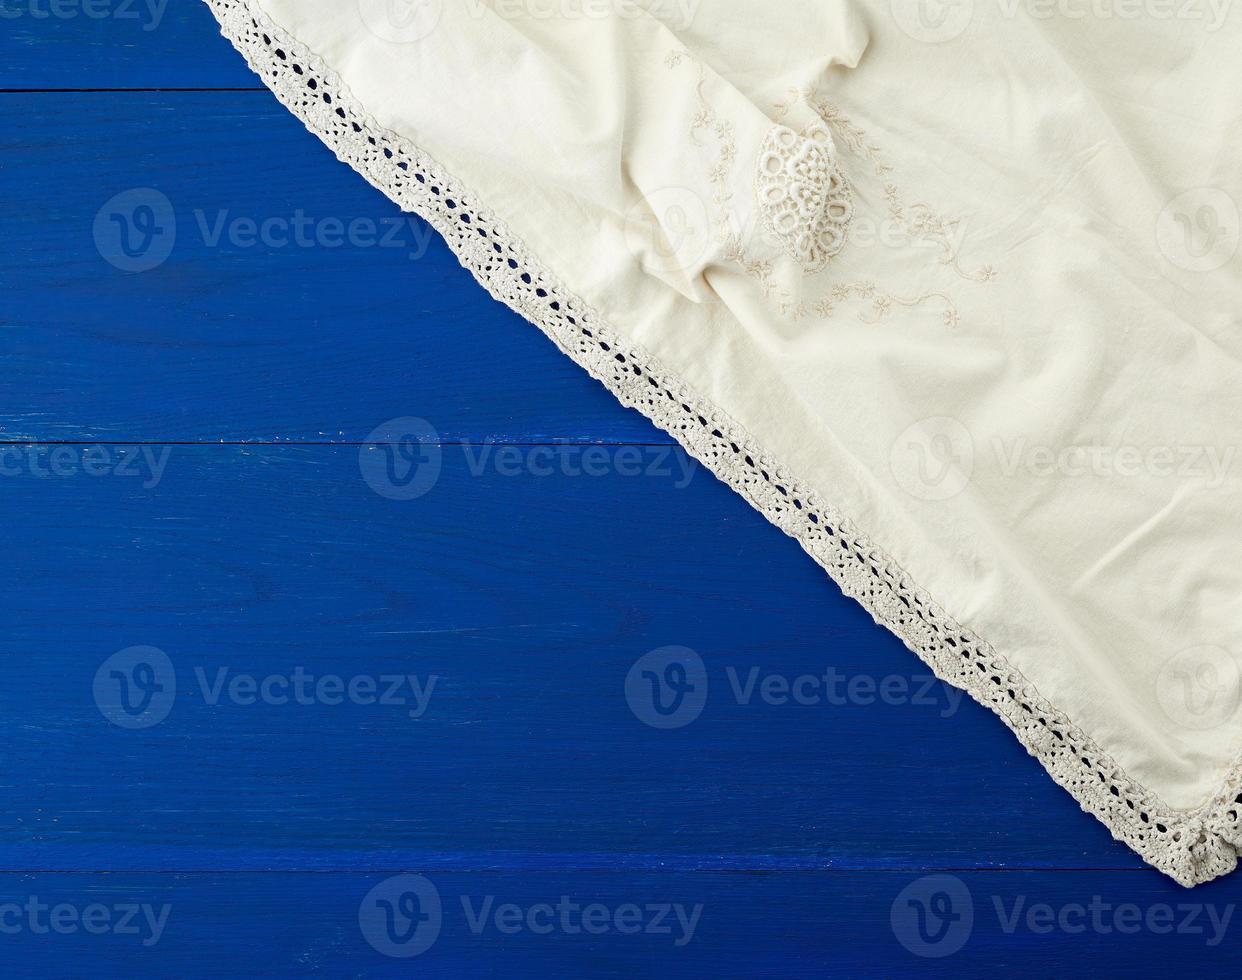 serviette textile de cuisine blanche pliée sur une table en bois bleue photo